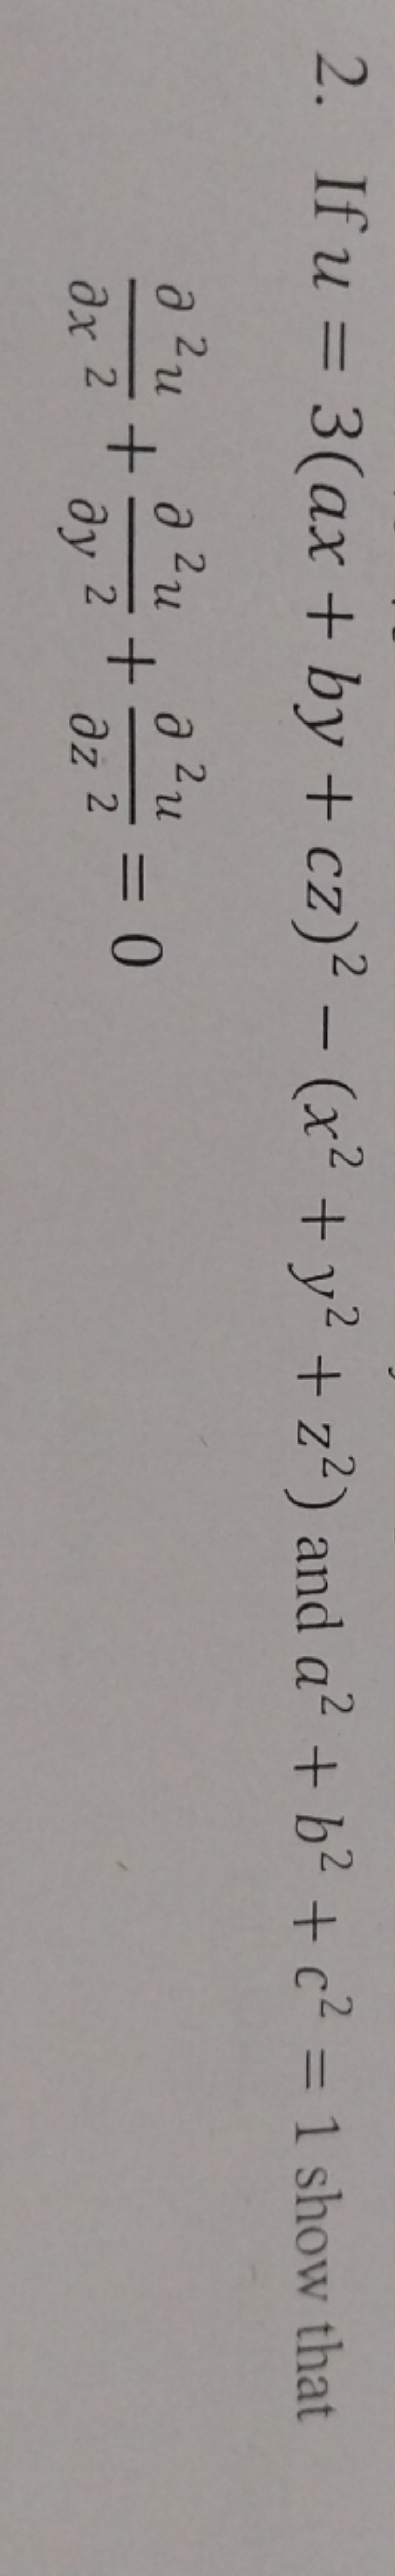 2. If u=3(ax+by+cz)2−(x2+y2+z2) and a2+b2+c2=1 show that ∂x2∂2u​+∂y2∂2